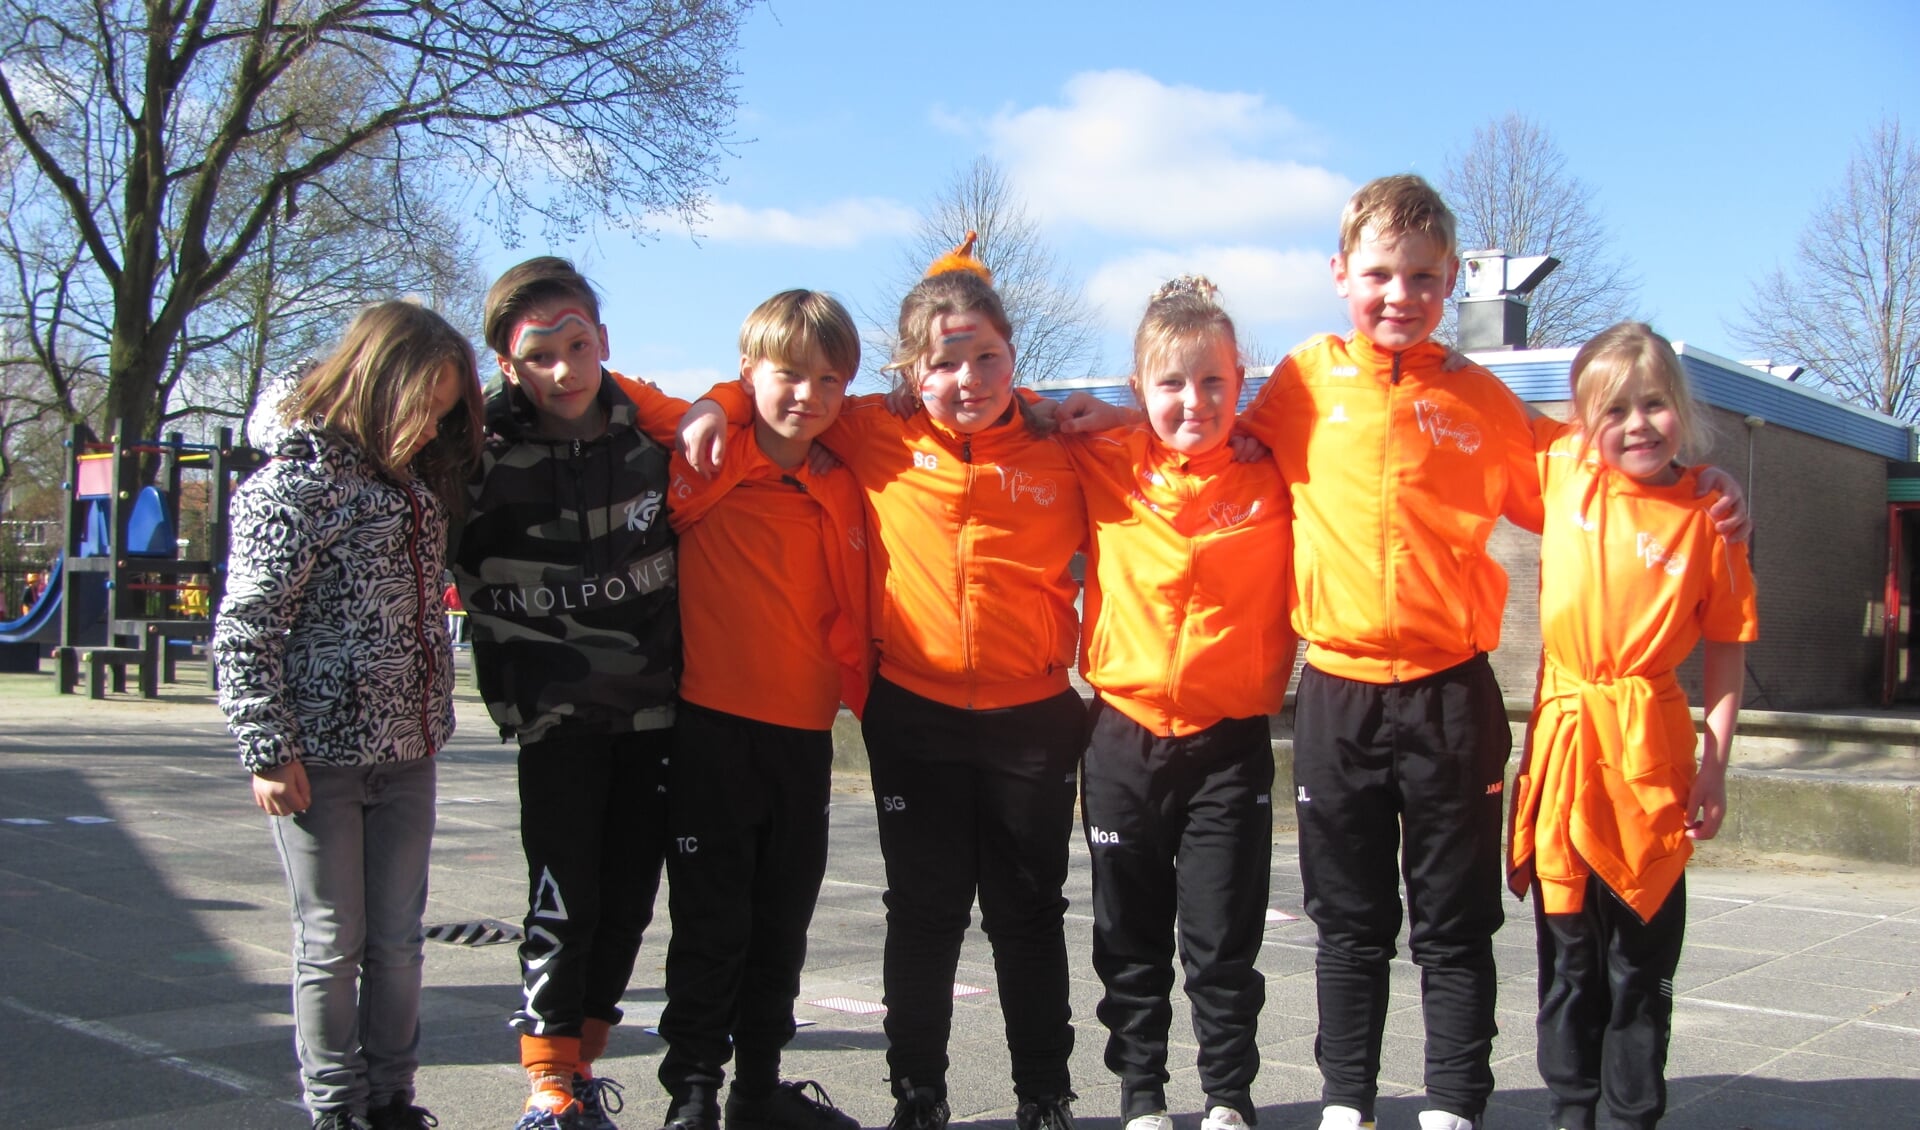 Oranje voert de boventoon tijdens de Koningsspelen in Klein Zundert.